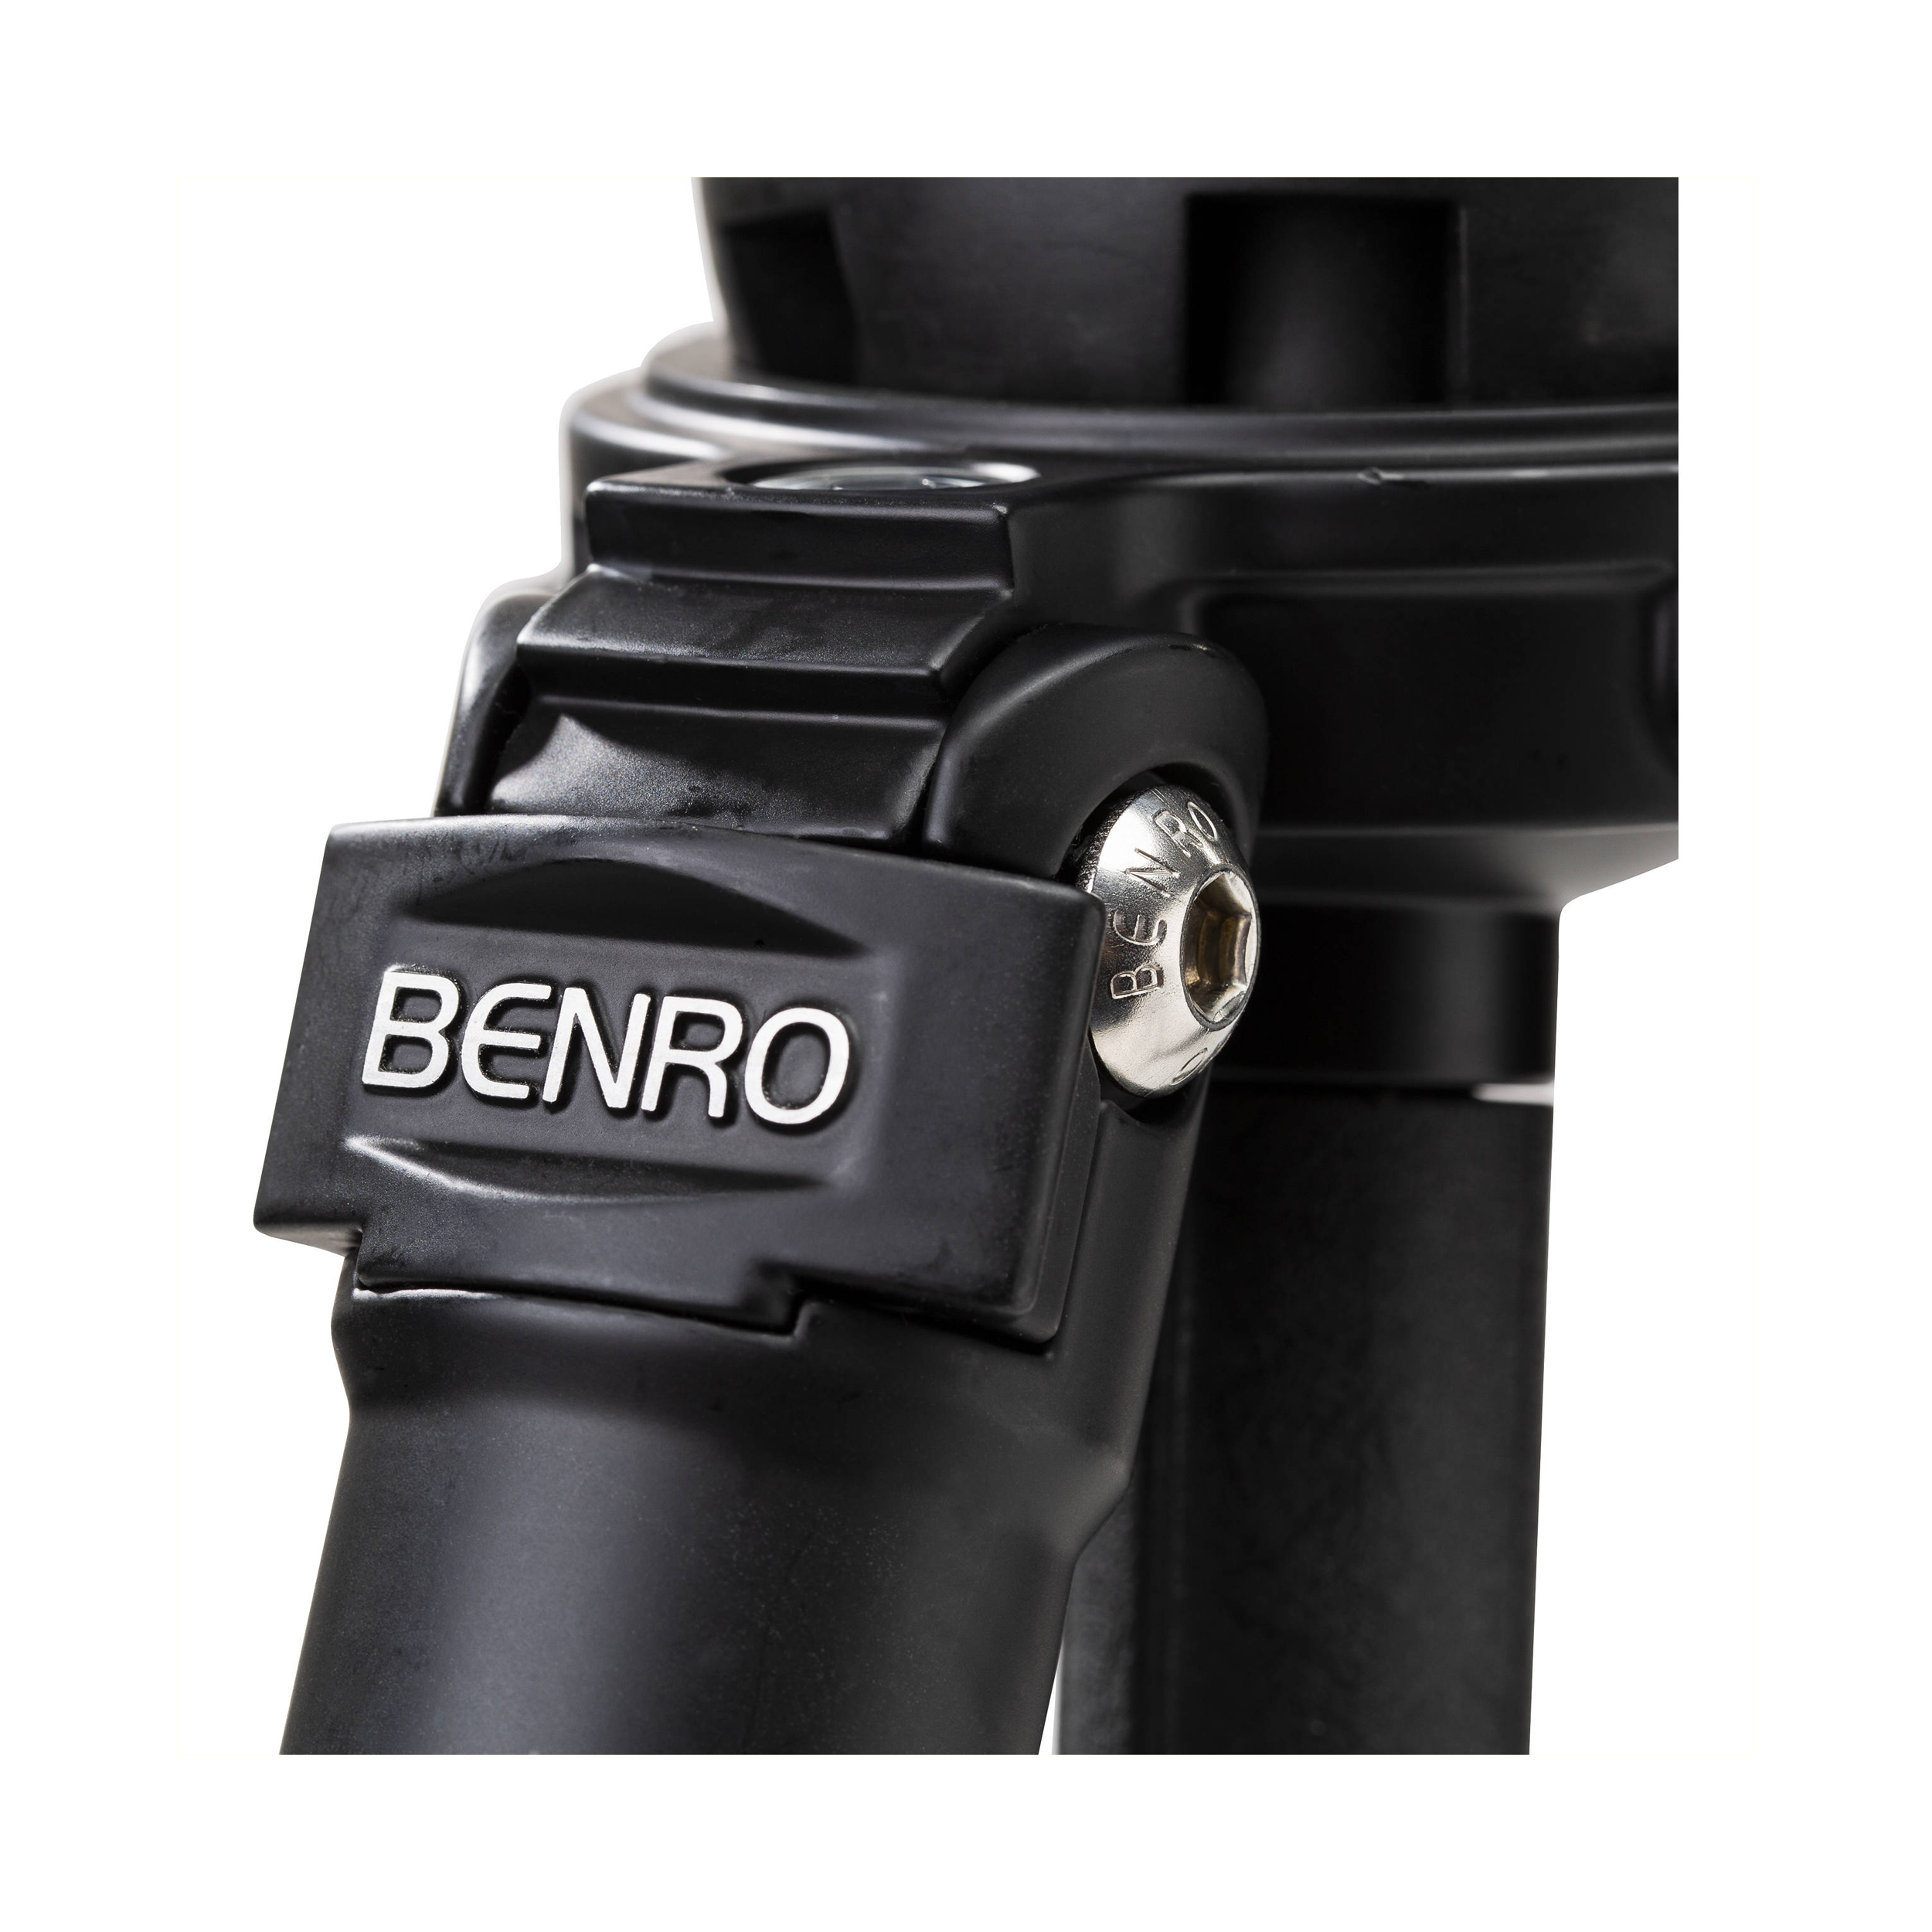 Trépied Benro C373F en fibre de carbone avec une tête vidéo fluide S8PRO